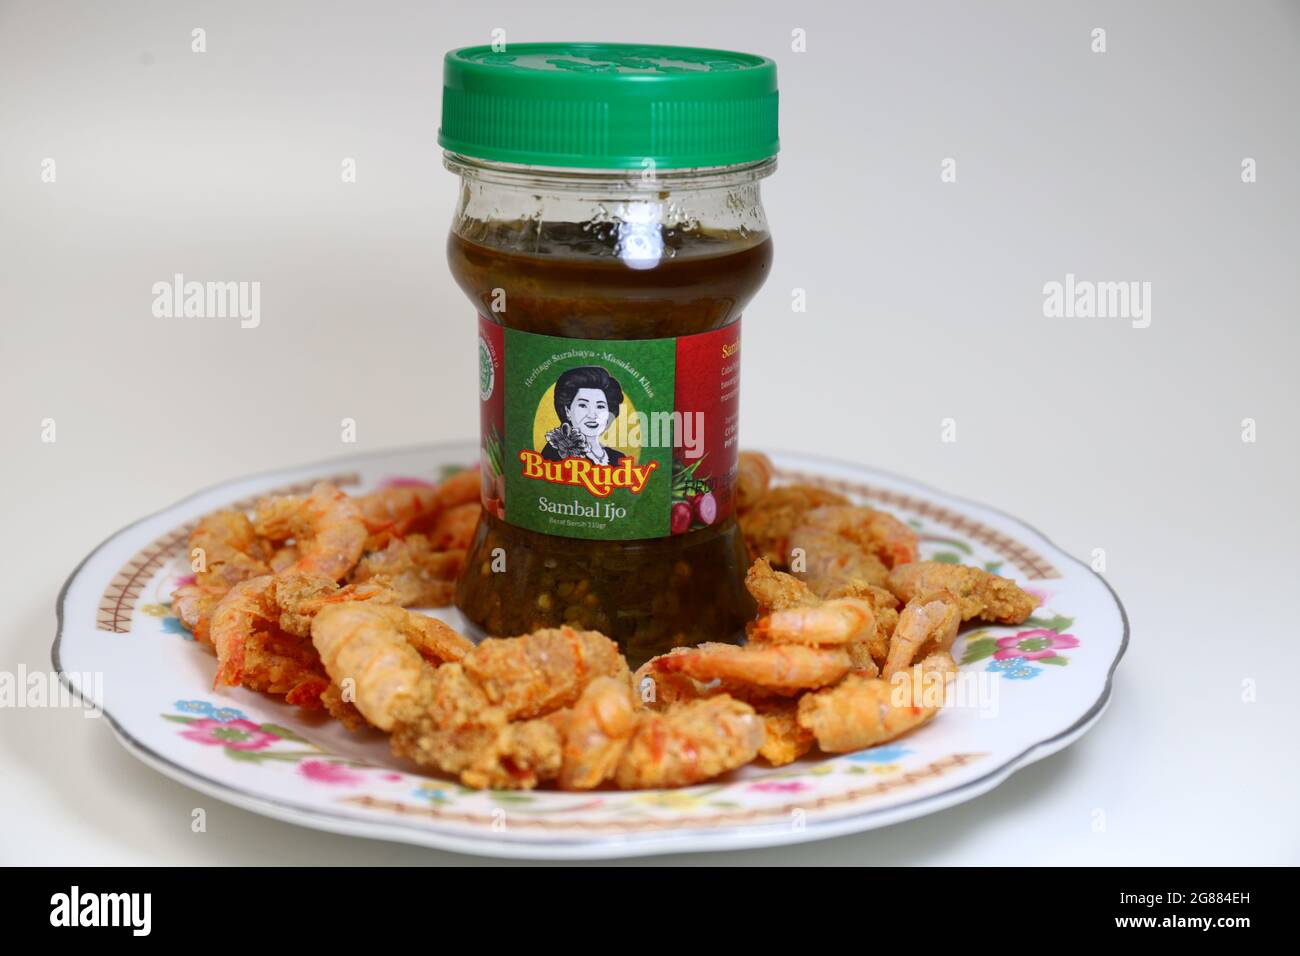 Photo de la sauce au Chili indonésien dans une bouteille avec fond blanc. Sambal BU Rudy. Groupe Chili. Banque D'Images